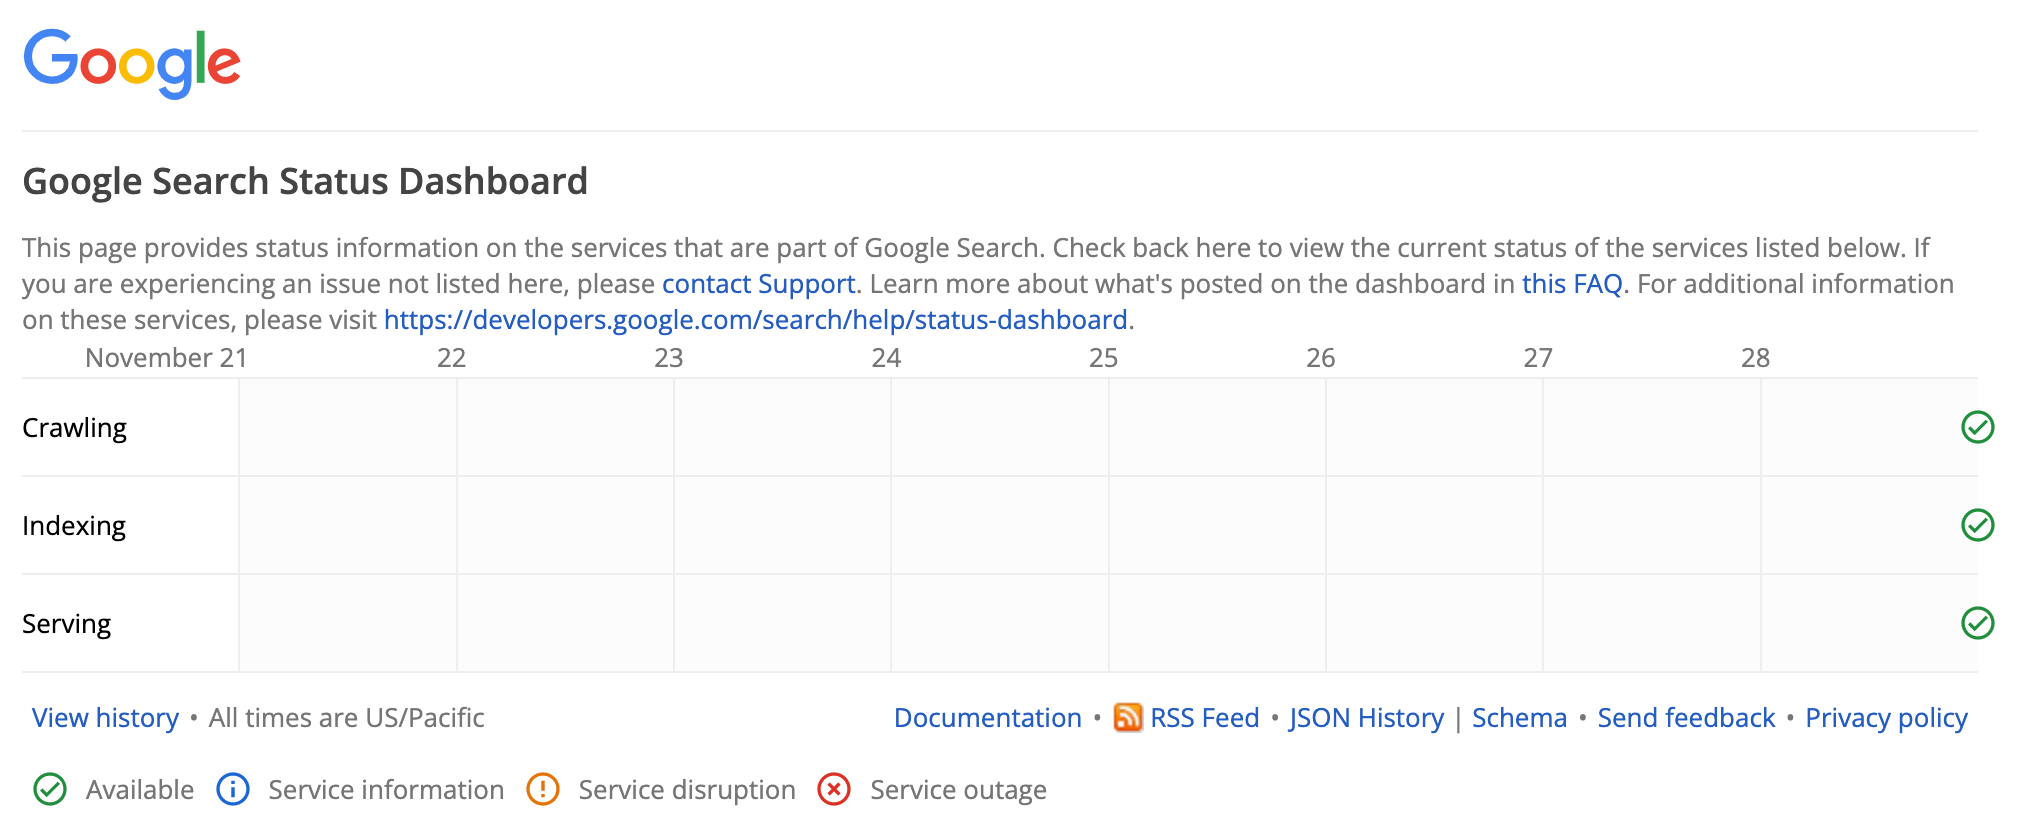 Dasbor Status Google Penelusuran tidak menampilkan insiden yang sedang terjadi